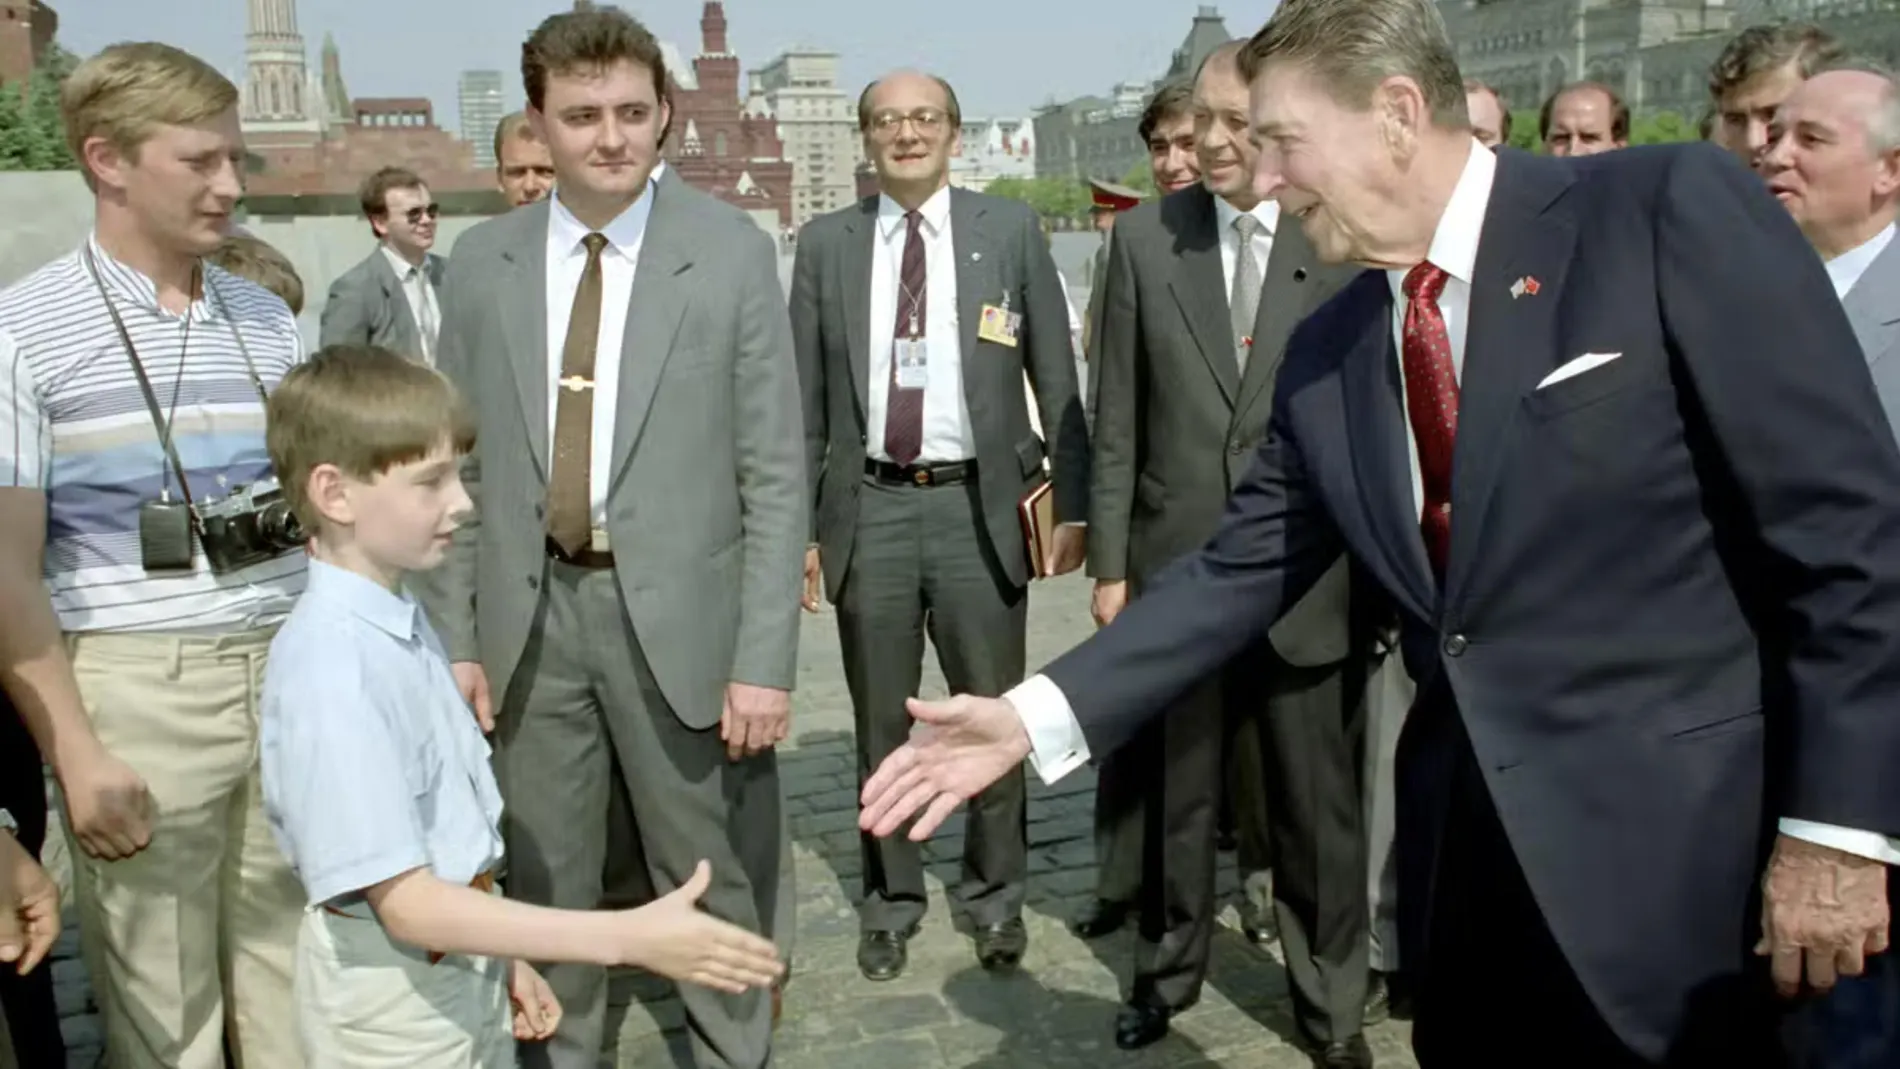 Ronald Reagan le da la mano a un niño mientras Mijaíl Gorbachov (der.) observa y el joven rubio (izq.) podría ser Vladimir Putin (izq.) espiando al presidente de EE UU